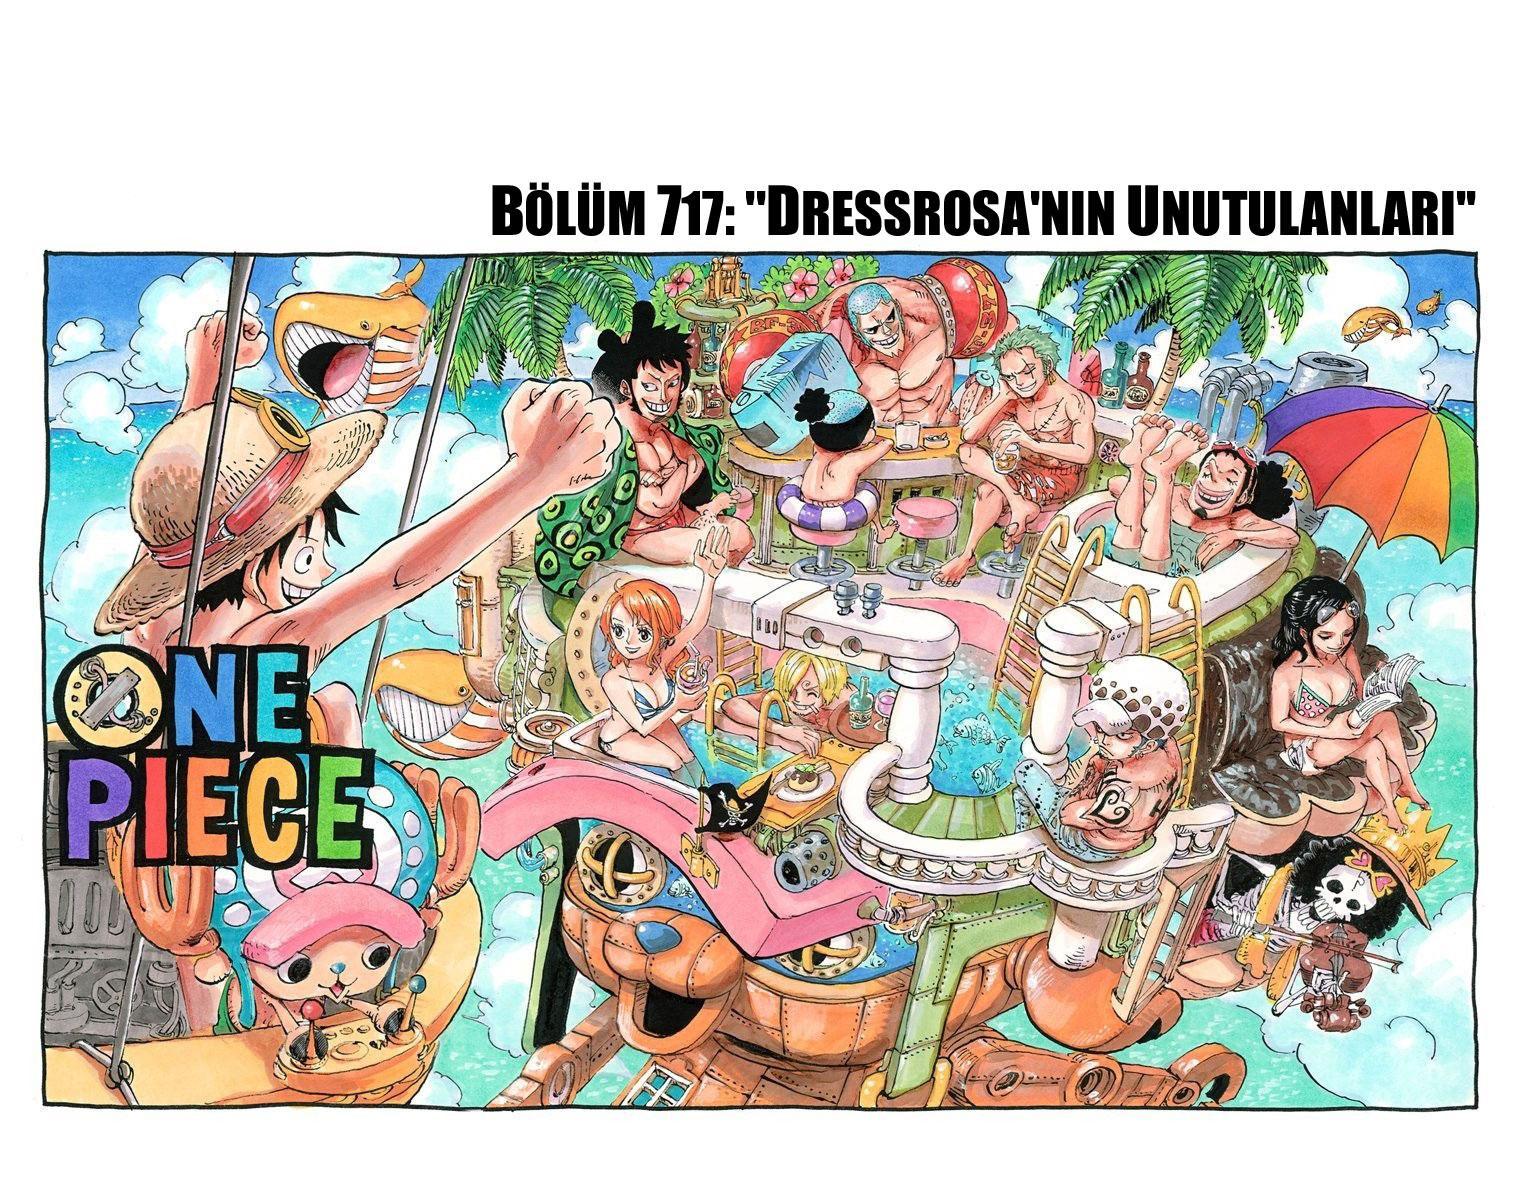 One Piece [Renkli] mangasının 717 bölümünün 2. sayfasını okuyorsunuz.